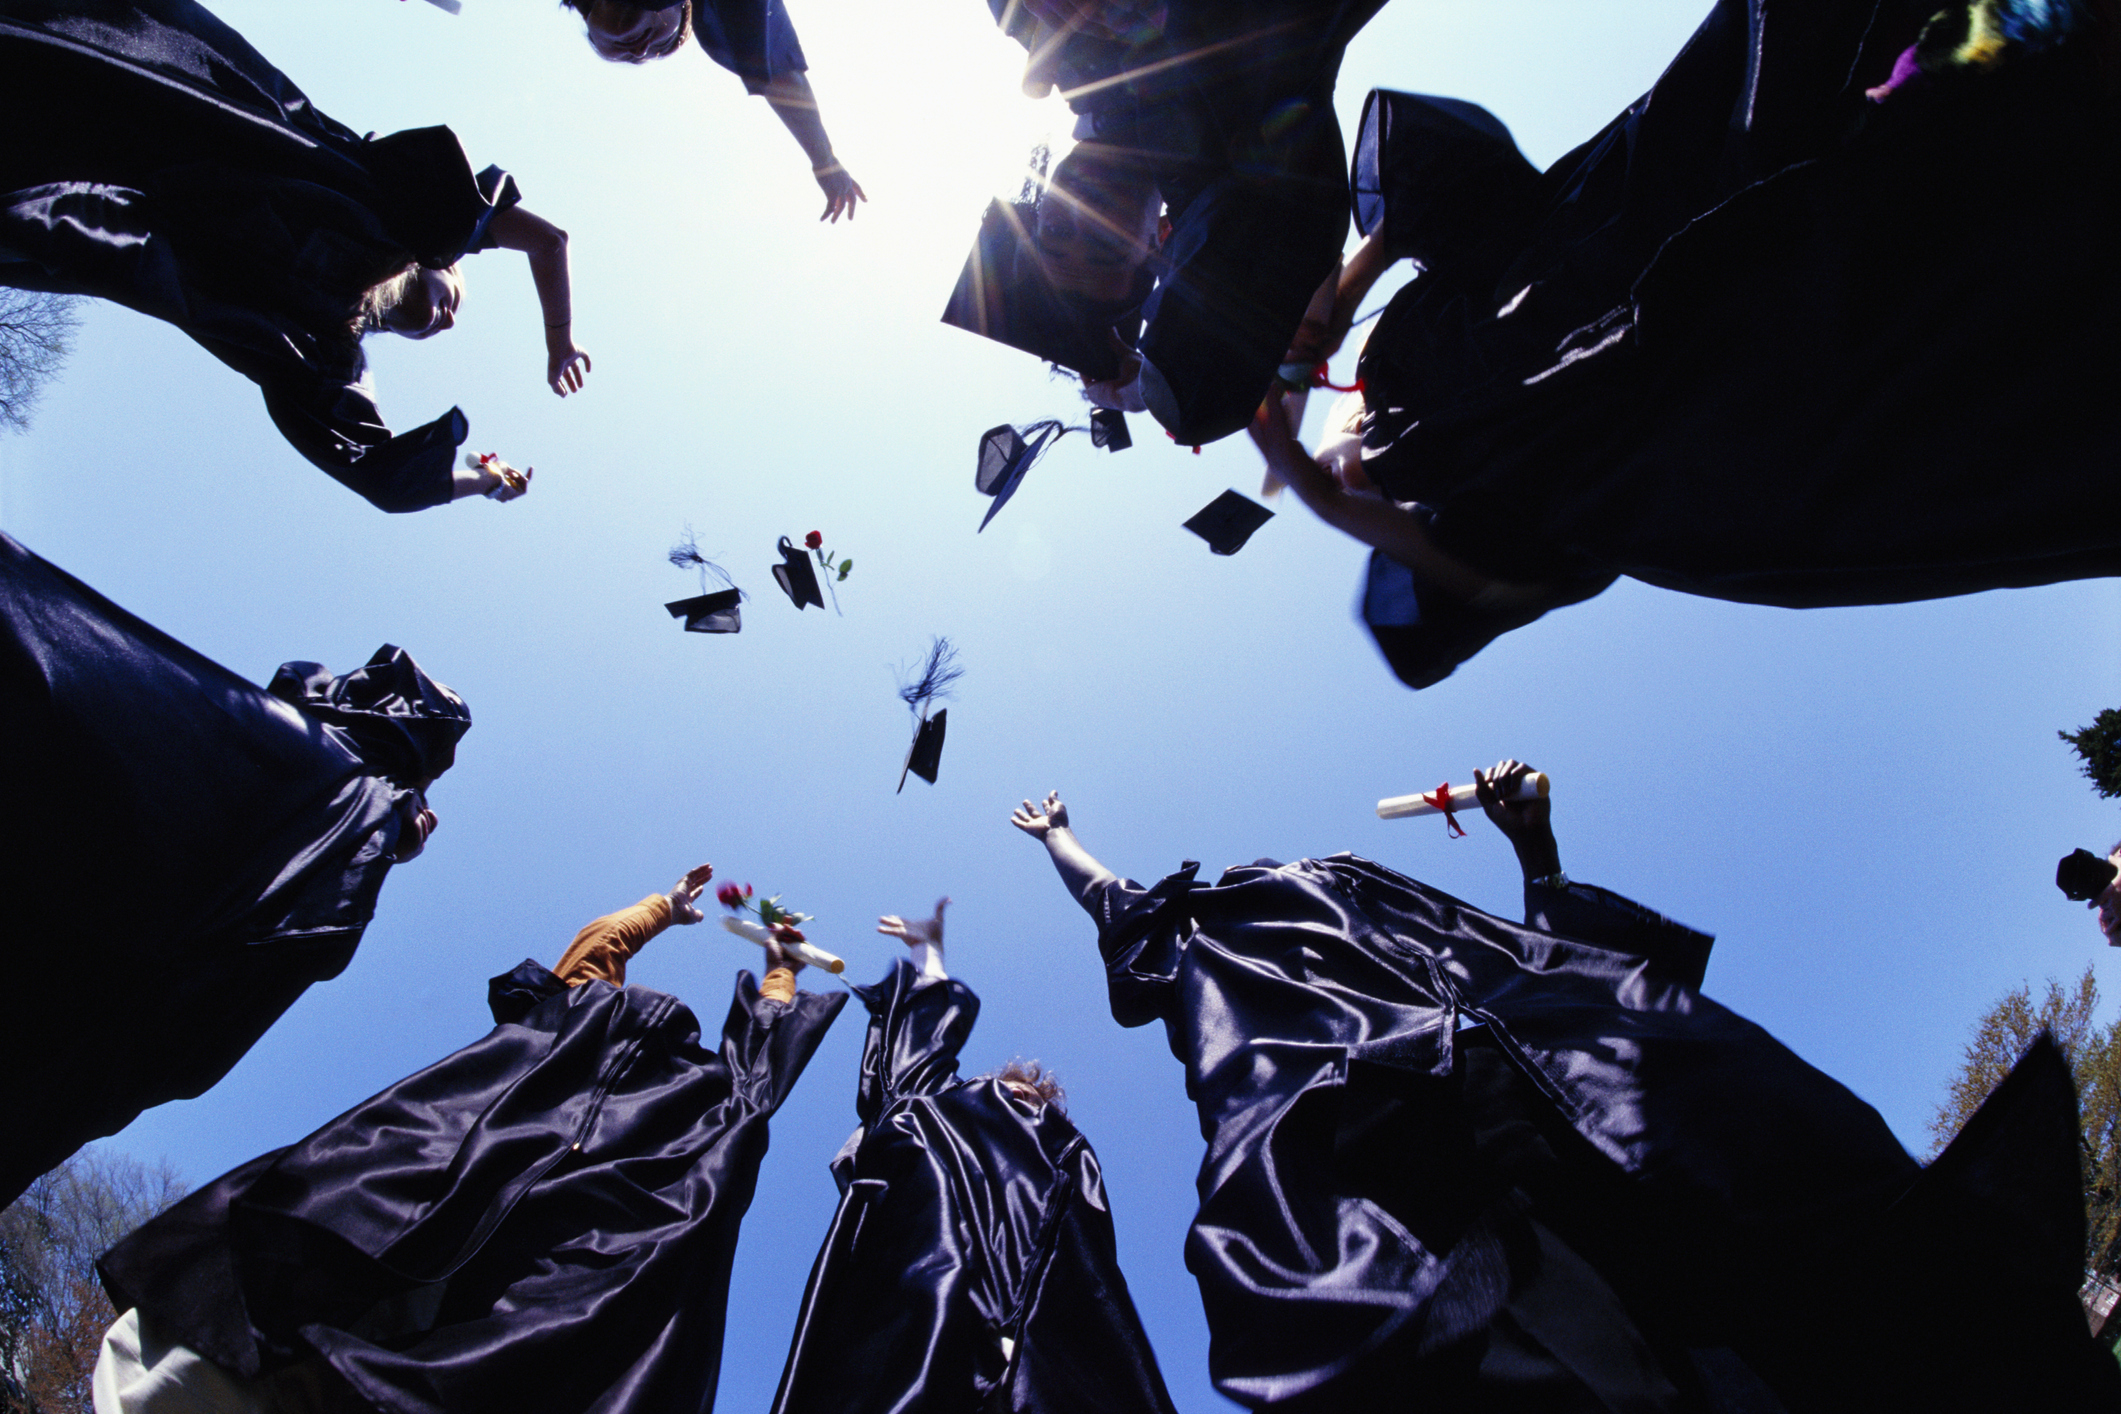 Graduates throw caps in the air